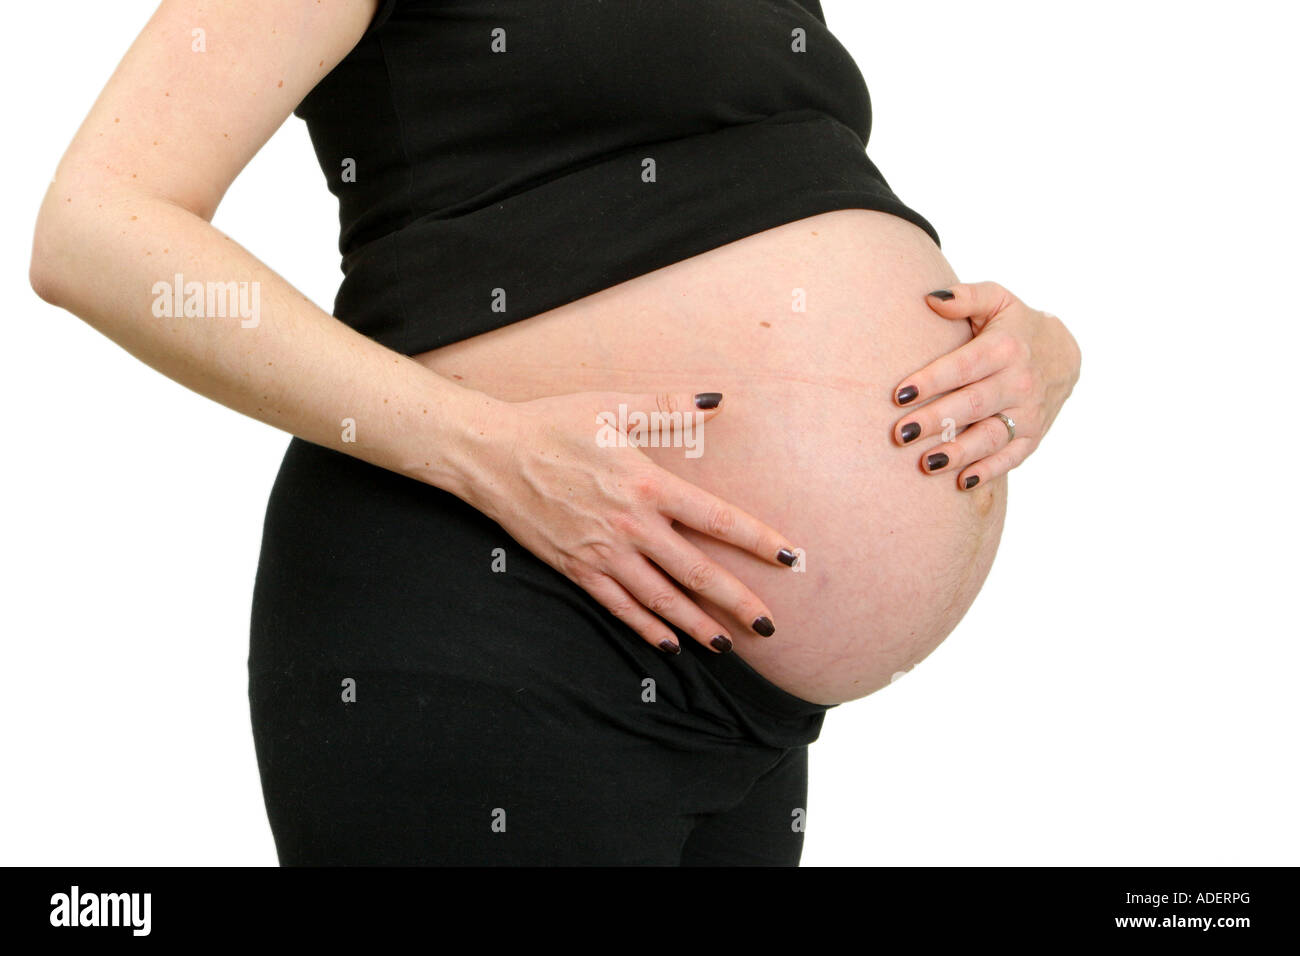 Femme enceinte de profil sentiment abdomen Photo Stock - Alamy